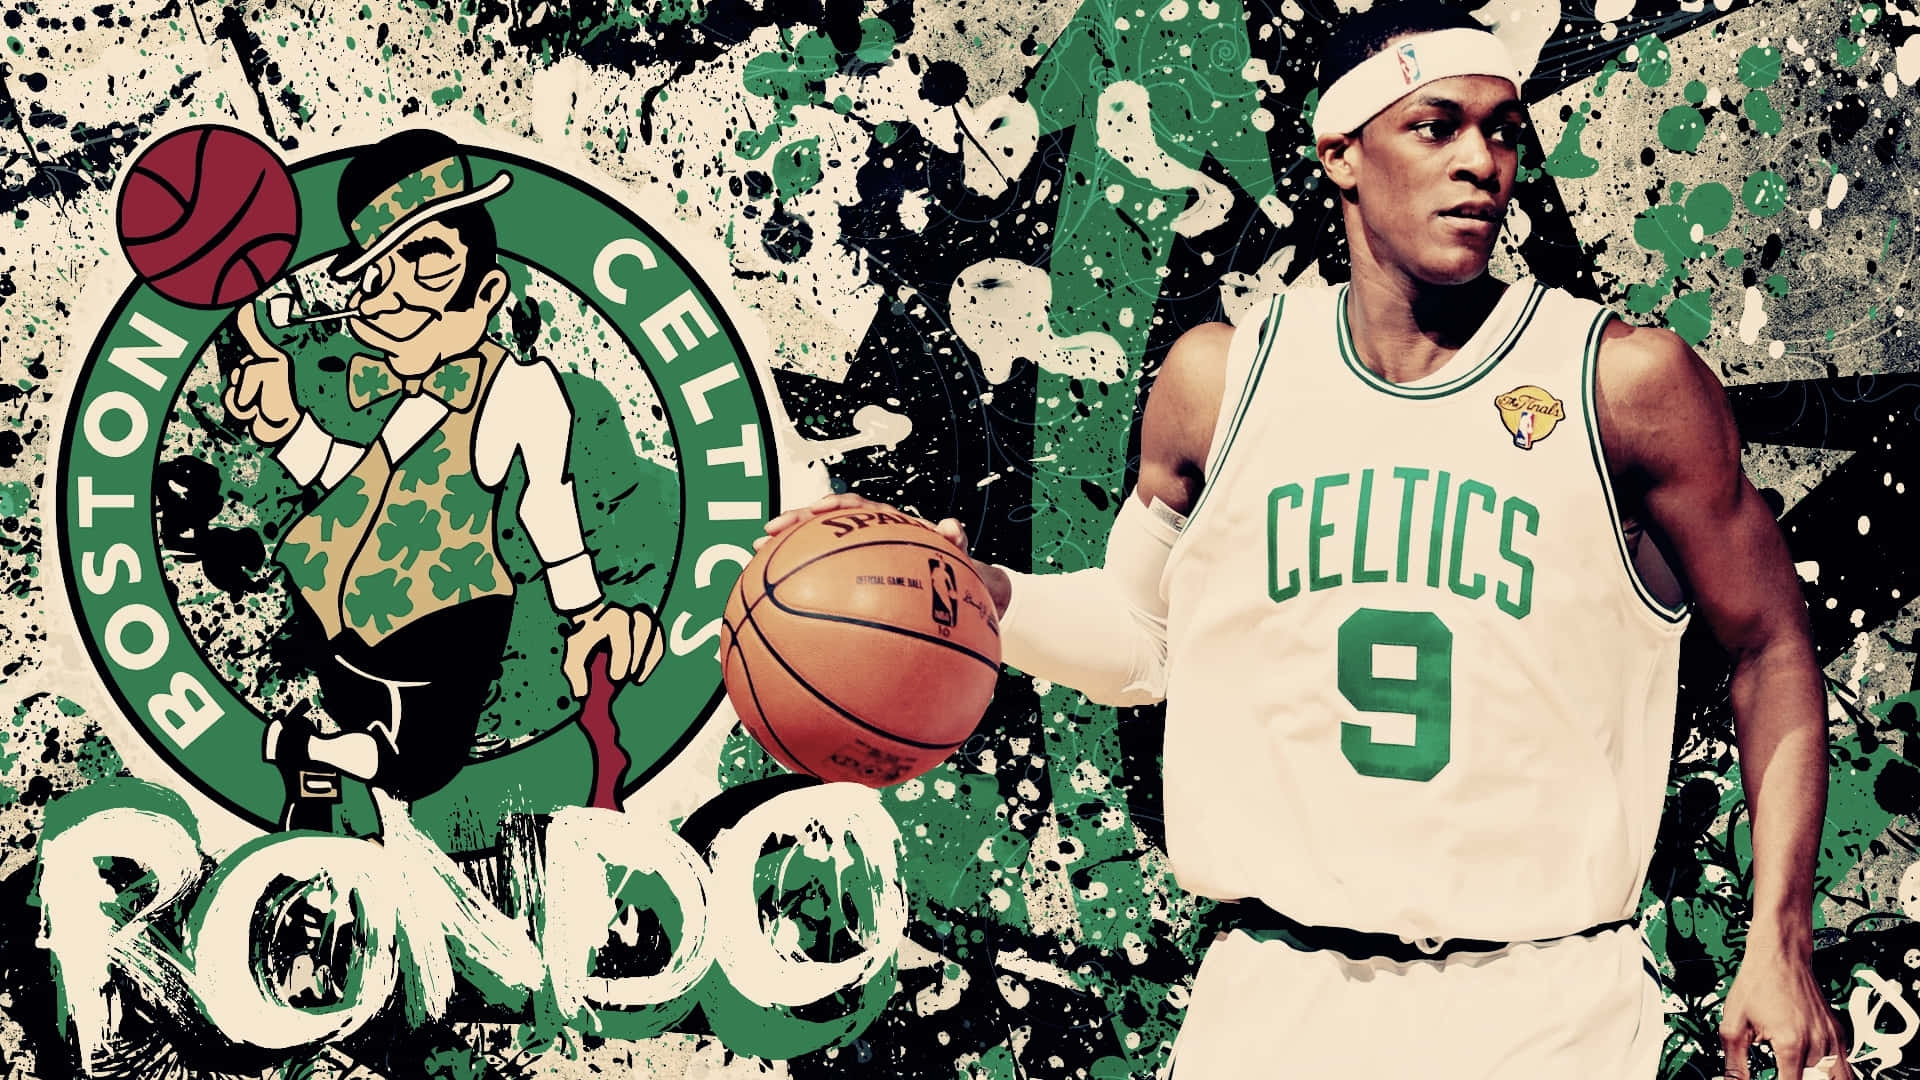 Feiereeinen Weiteren Sieg Der Boston Celtics!